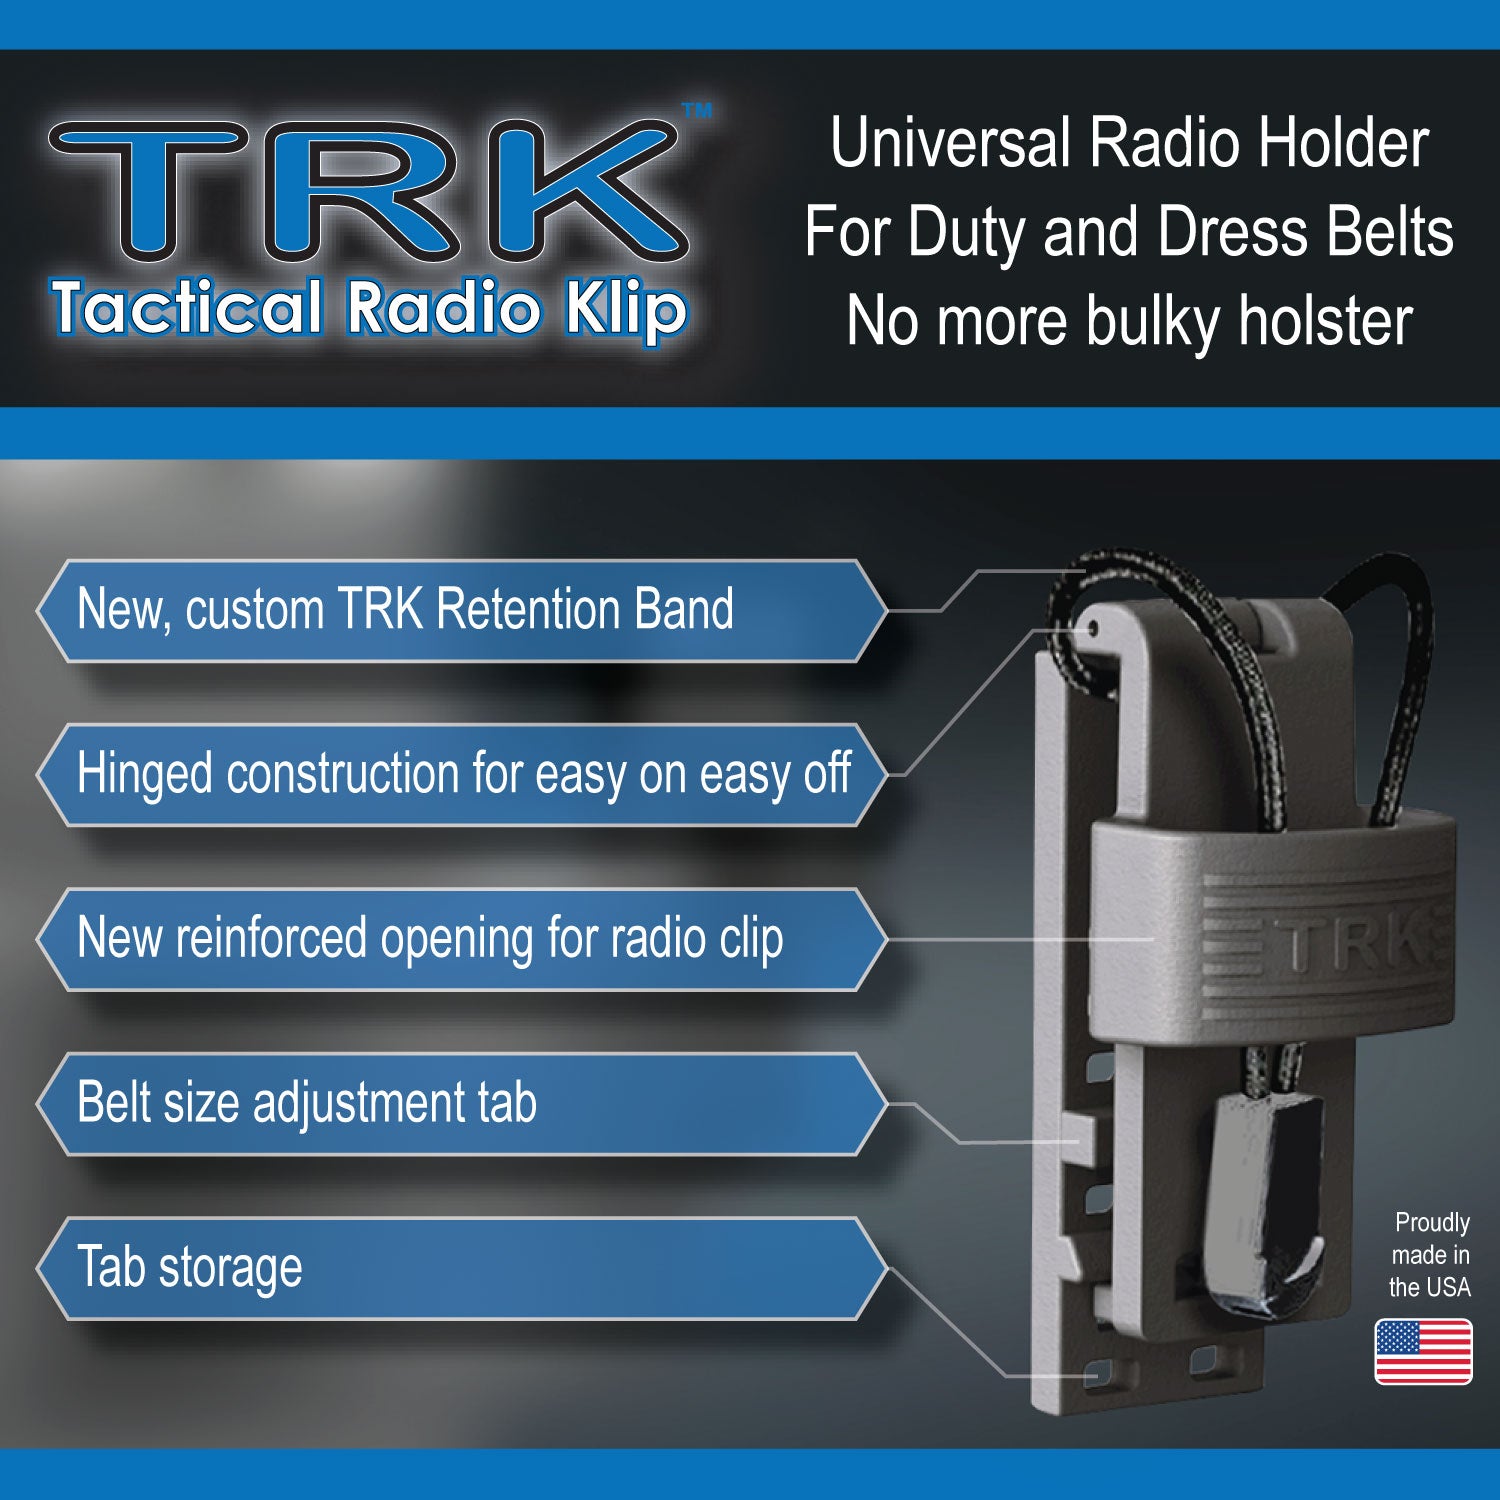 Tactical Radio Klip Universal Radio Holder | TacticalKlips – TacticalKlips  (Retail)